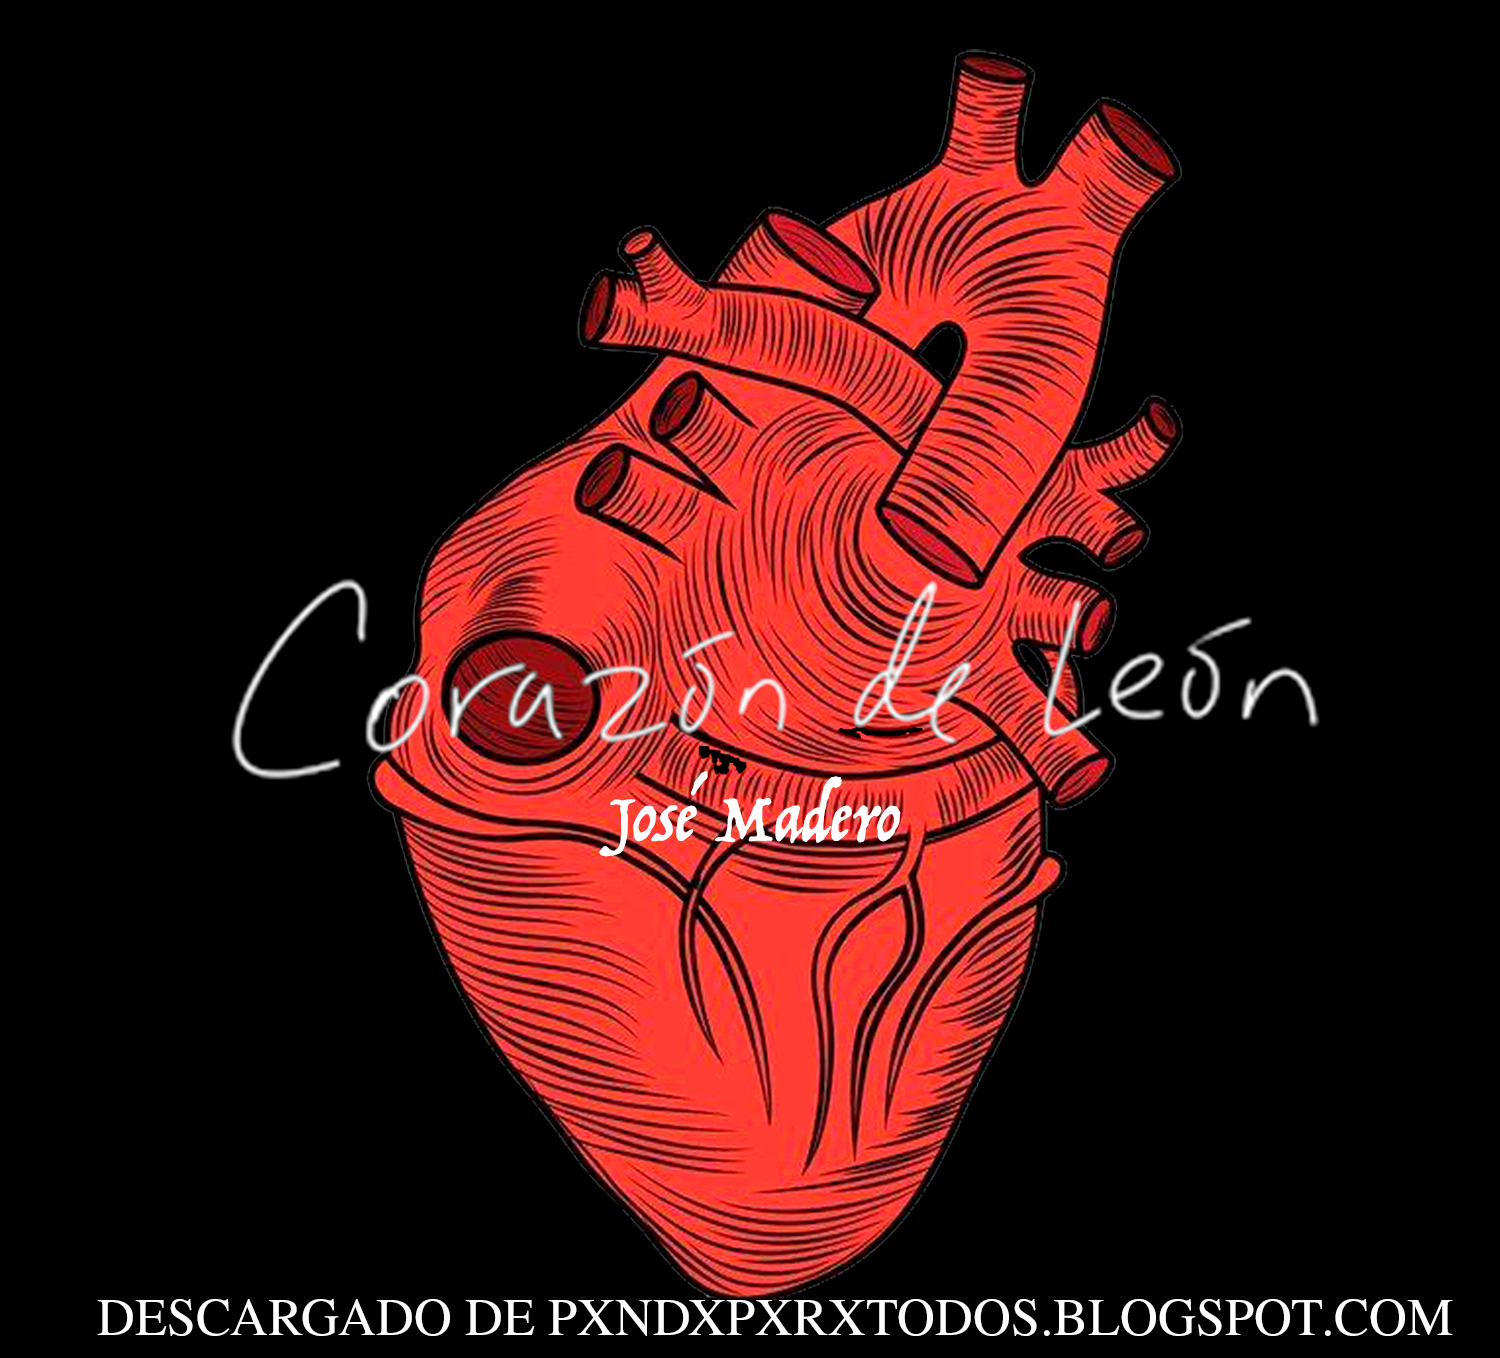 Corazón de León - José Madero